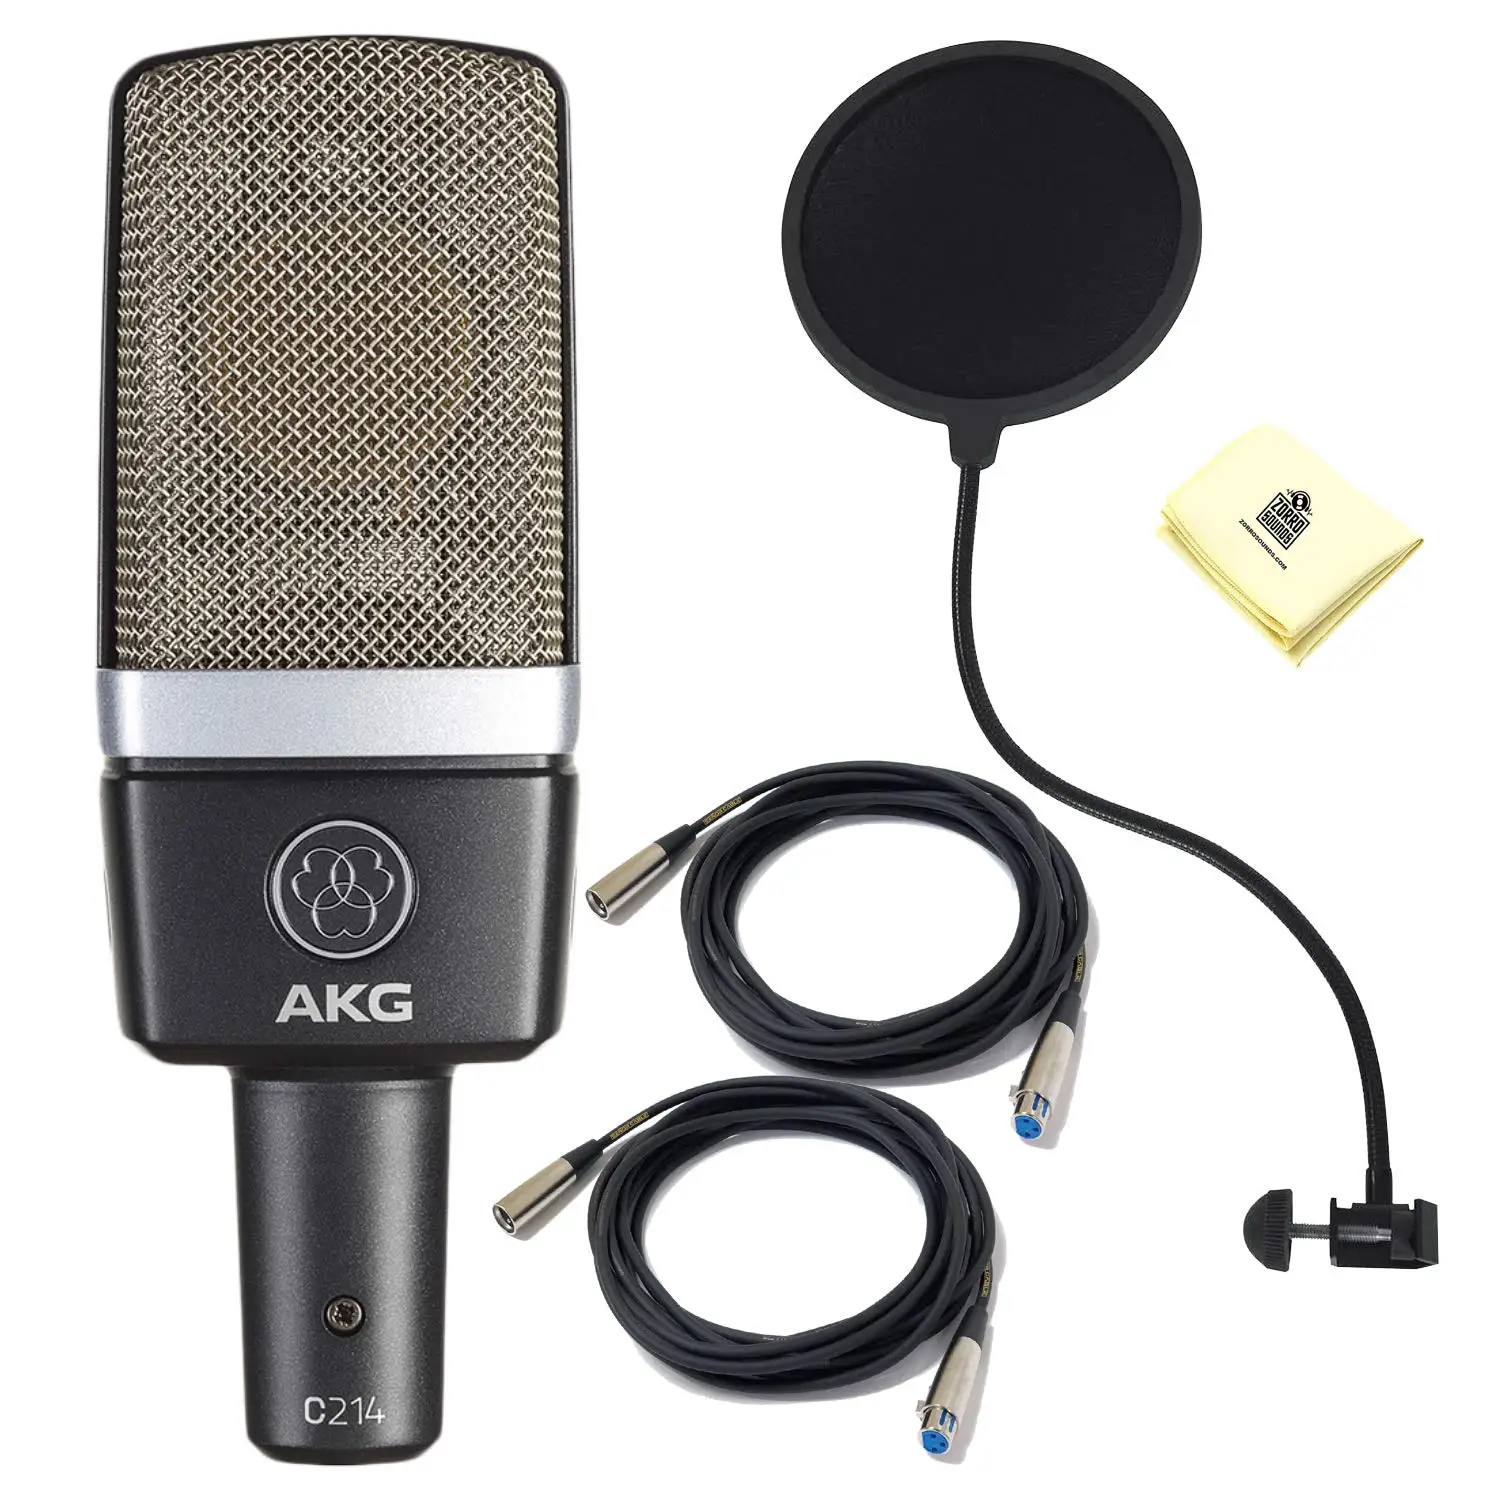 

Микрофон конденсаторный AKG Pro Audio C414 XLII